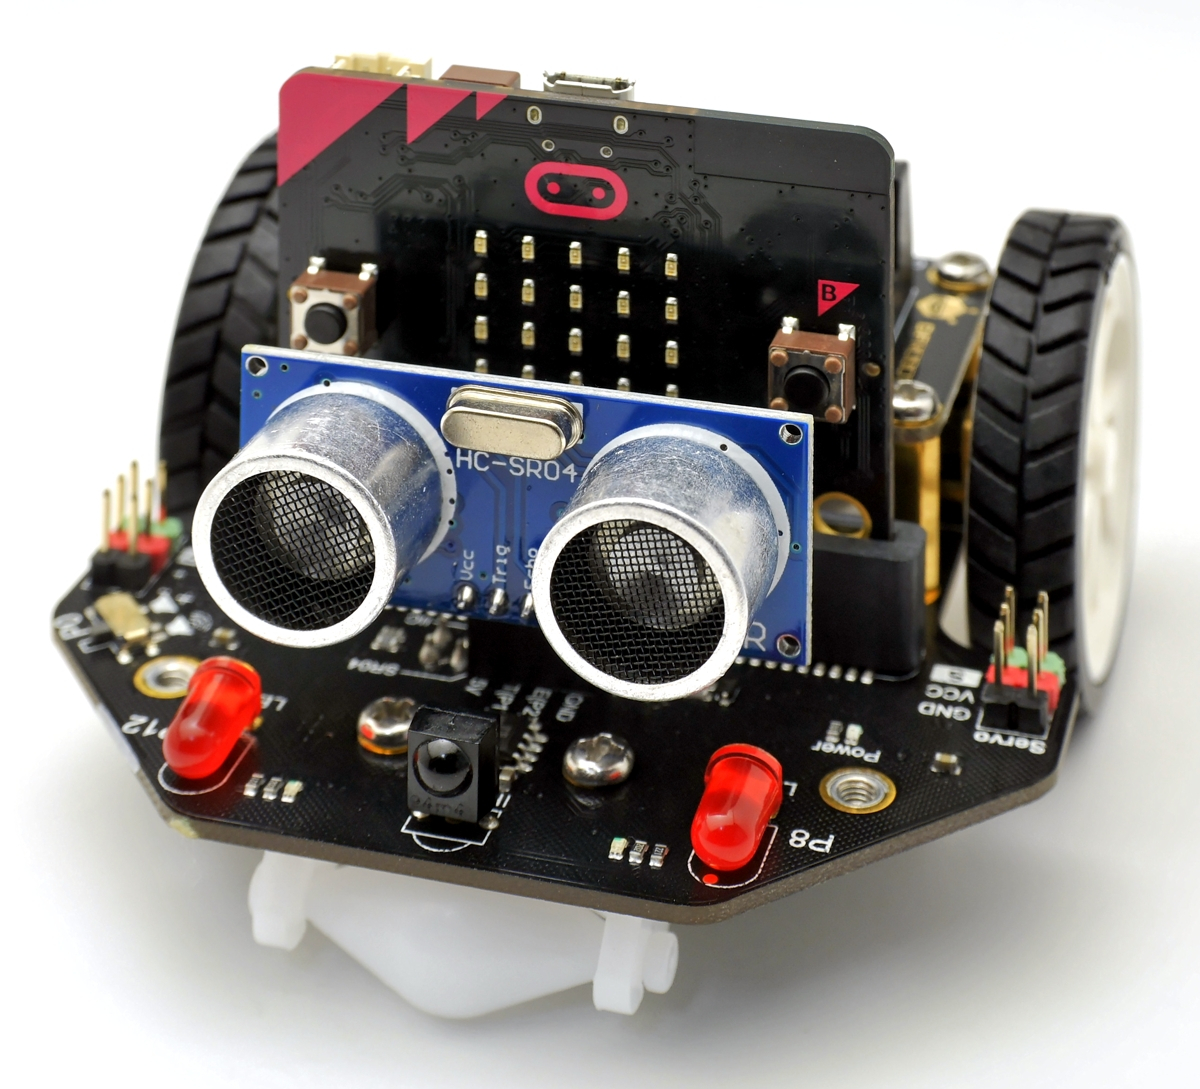 図1-1.STEM教育用のプログラミングロボット「micro:Maqueen V4.0」